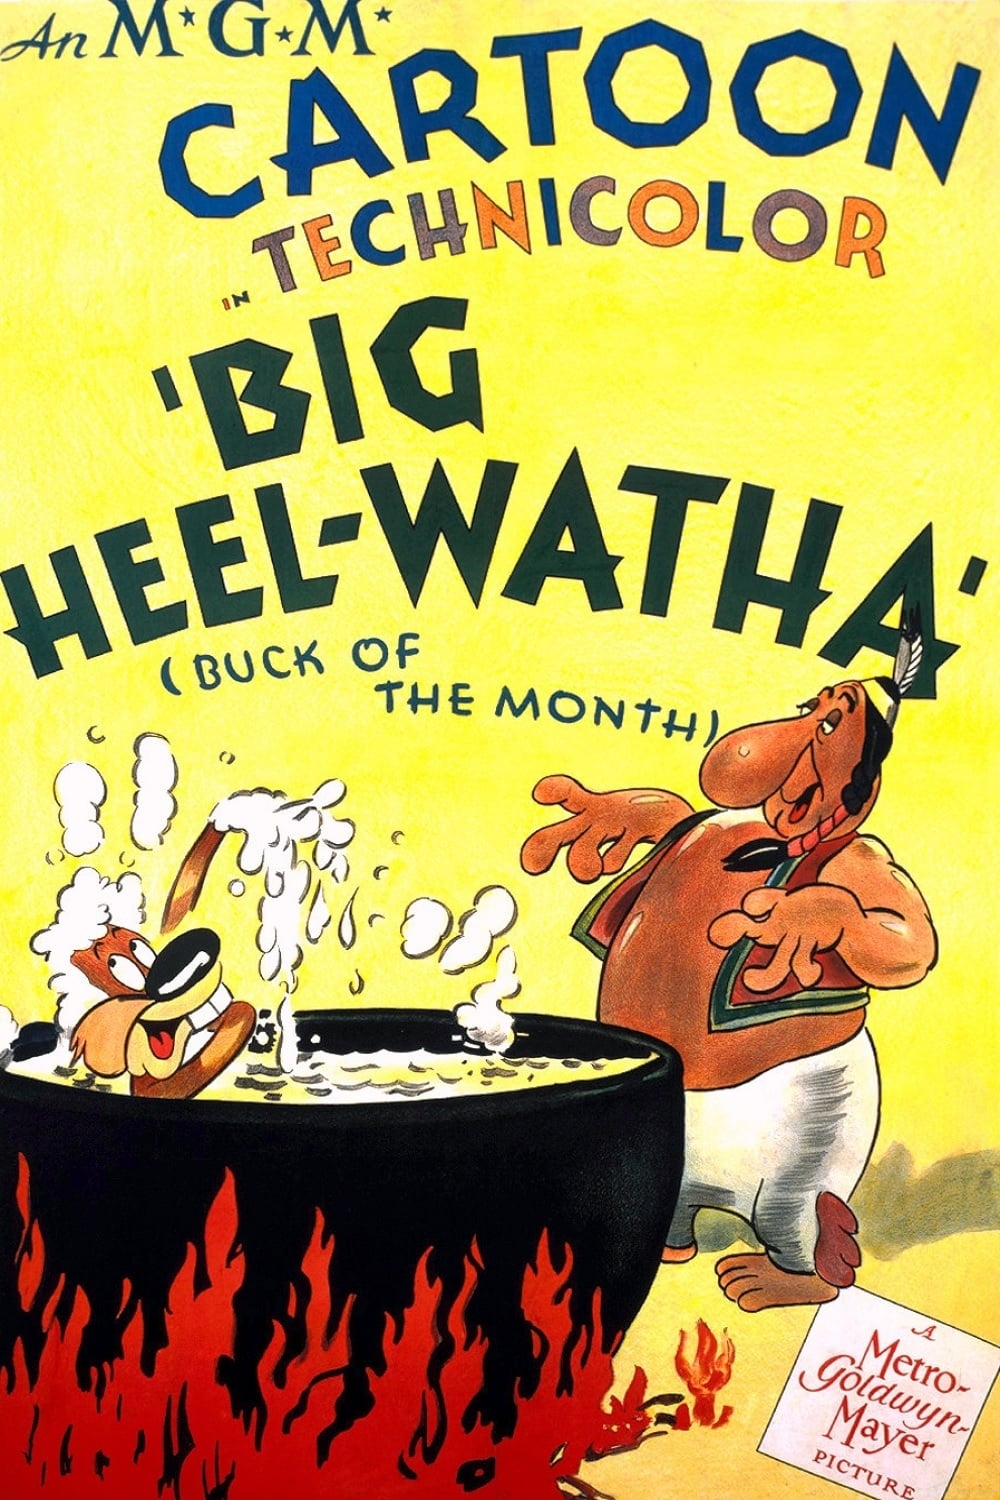 Big Heel-Watha (1944)